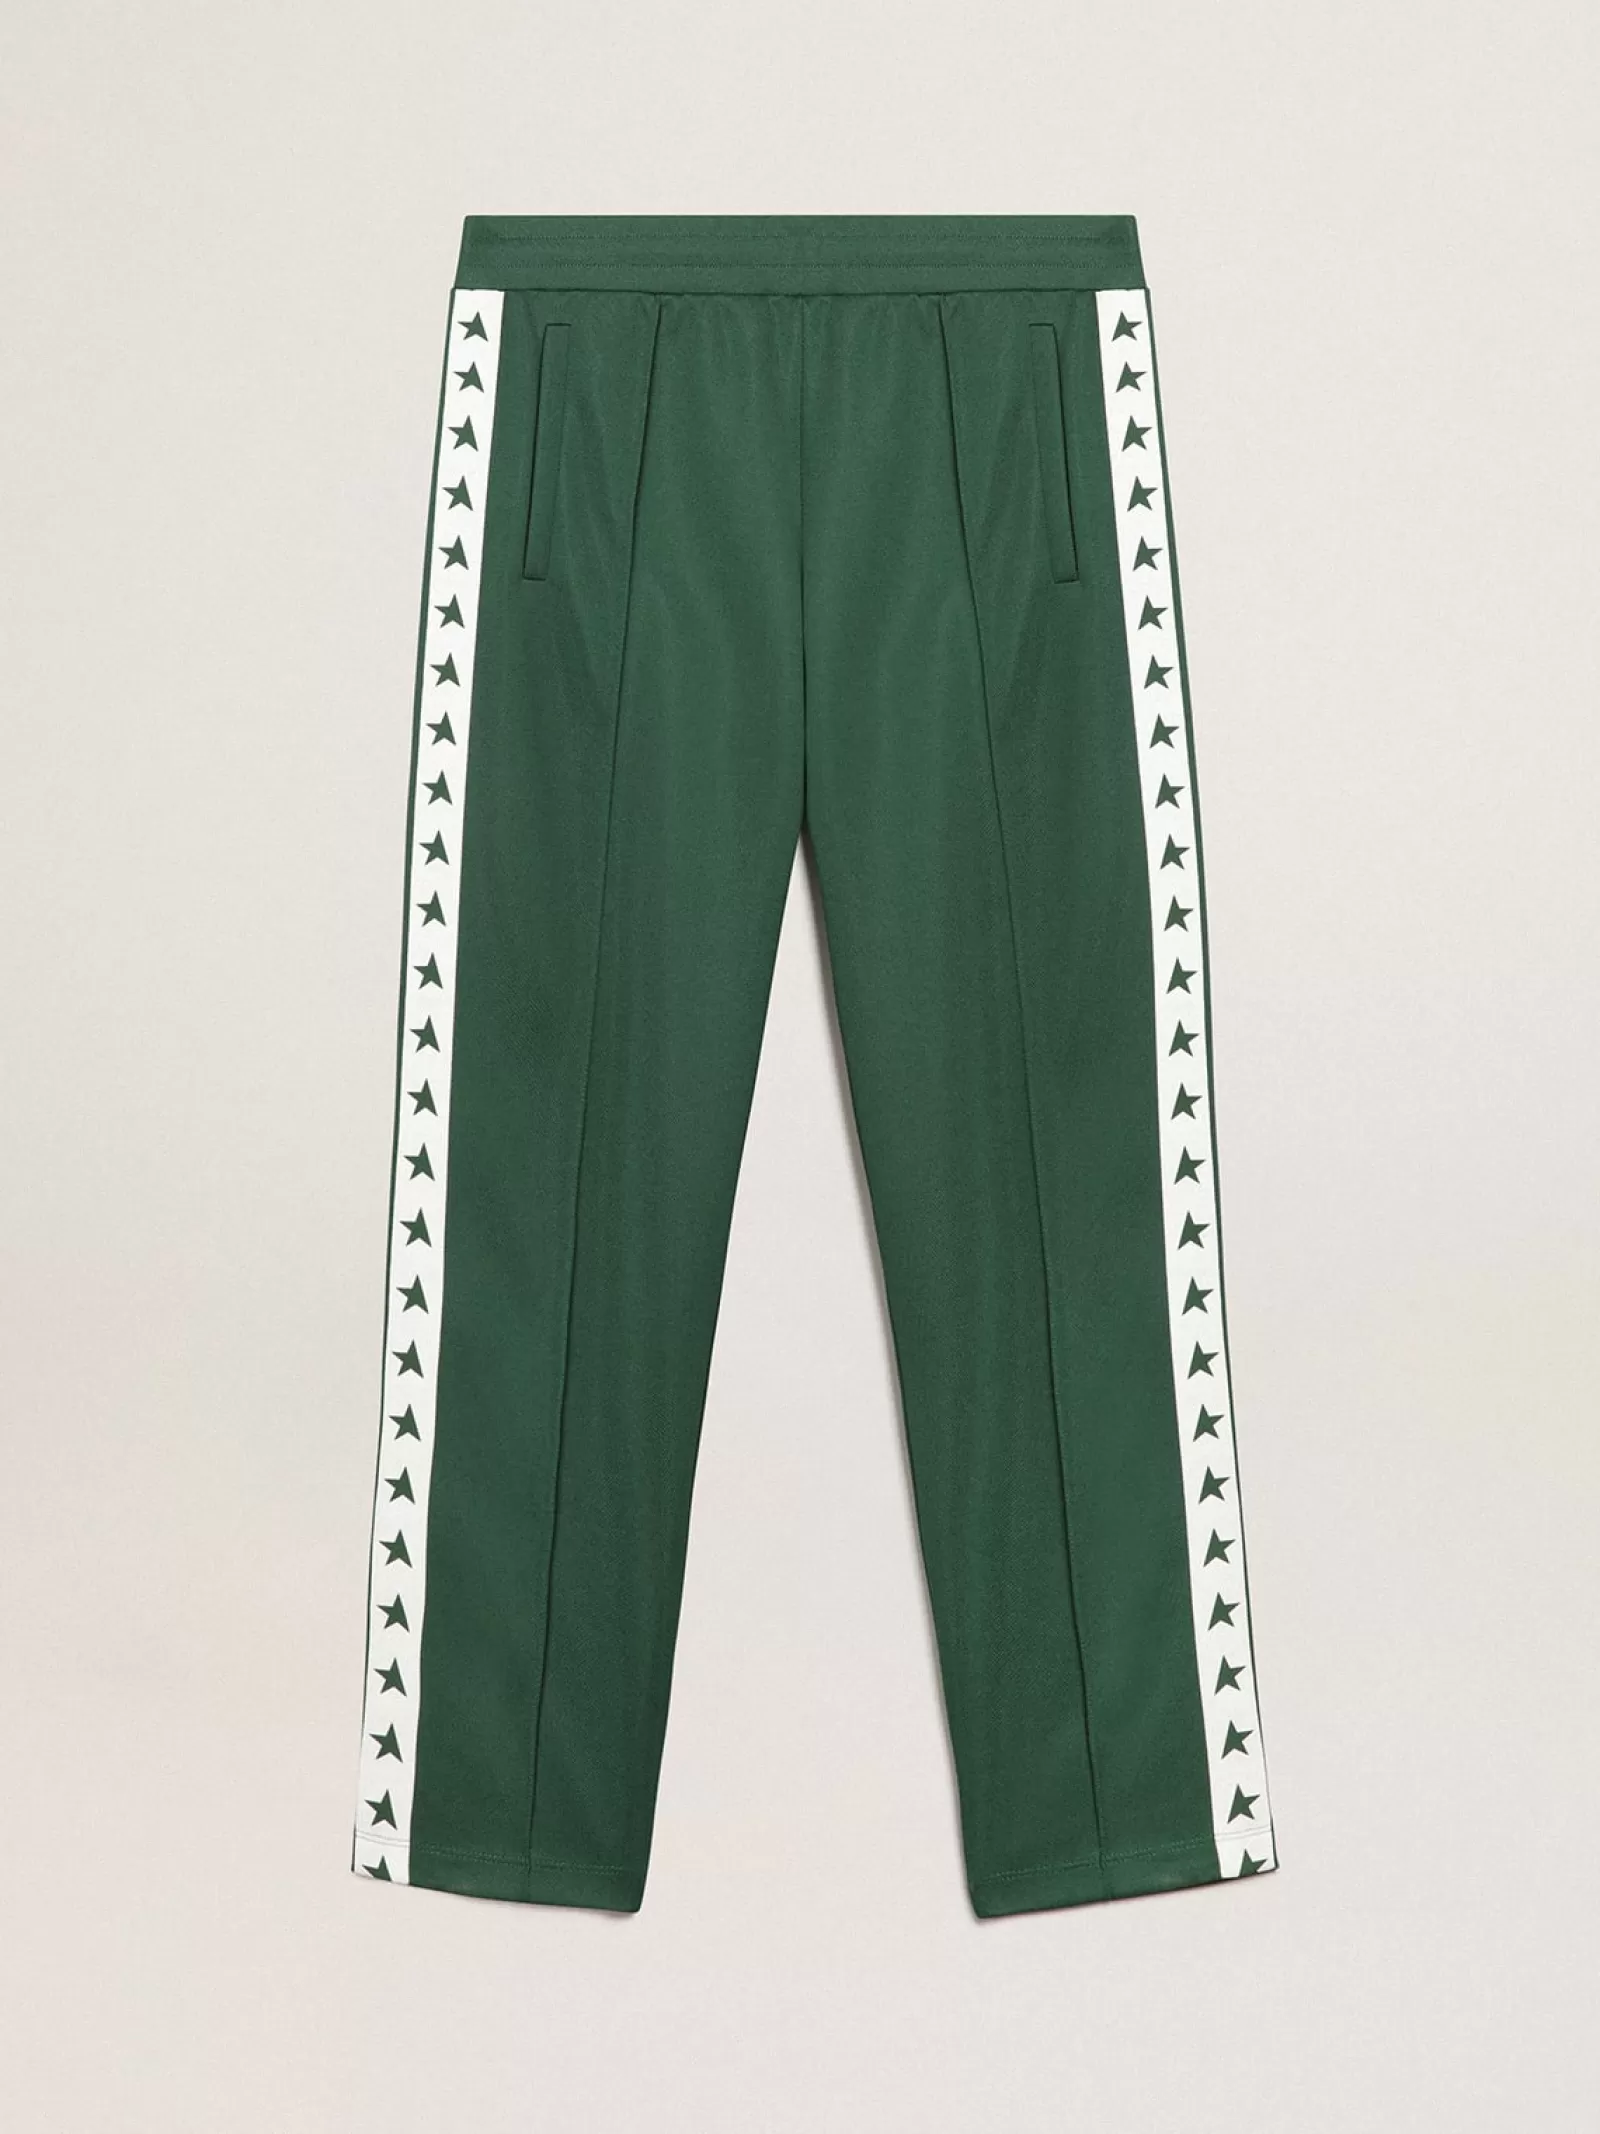 Pantalon de jogging homme couleur vert brillant | Golden Goose Cheap